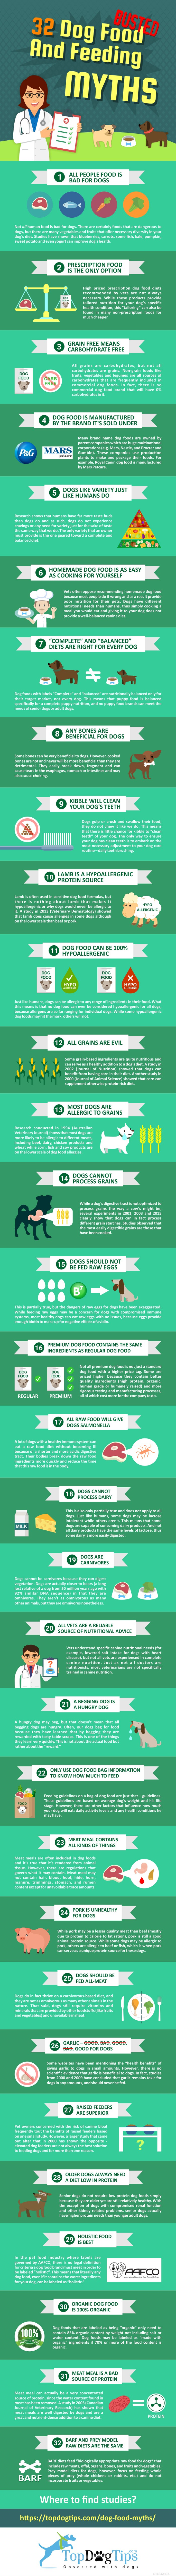 31 mythes over hondenvoer en voeding ontkracht [Infographic]